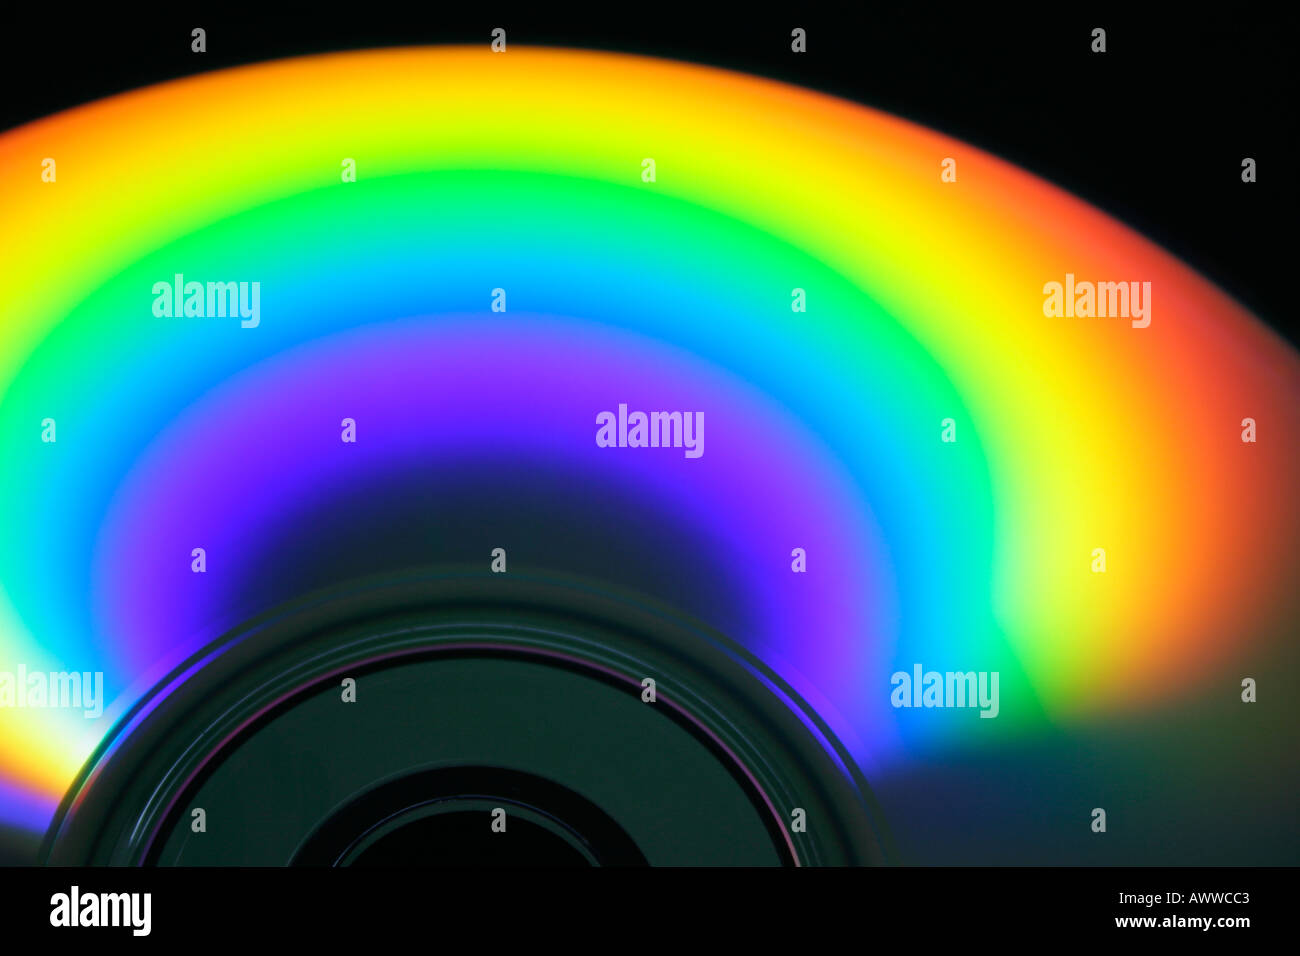 De couleur arc-en-ciel la réflexion sur la surface du disque compact est causée par la diffraction de la lumière l'accent sur le bord intérieur Banque D'Images